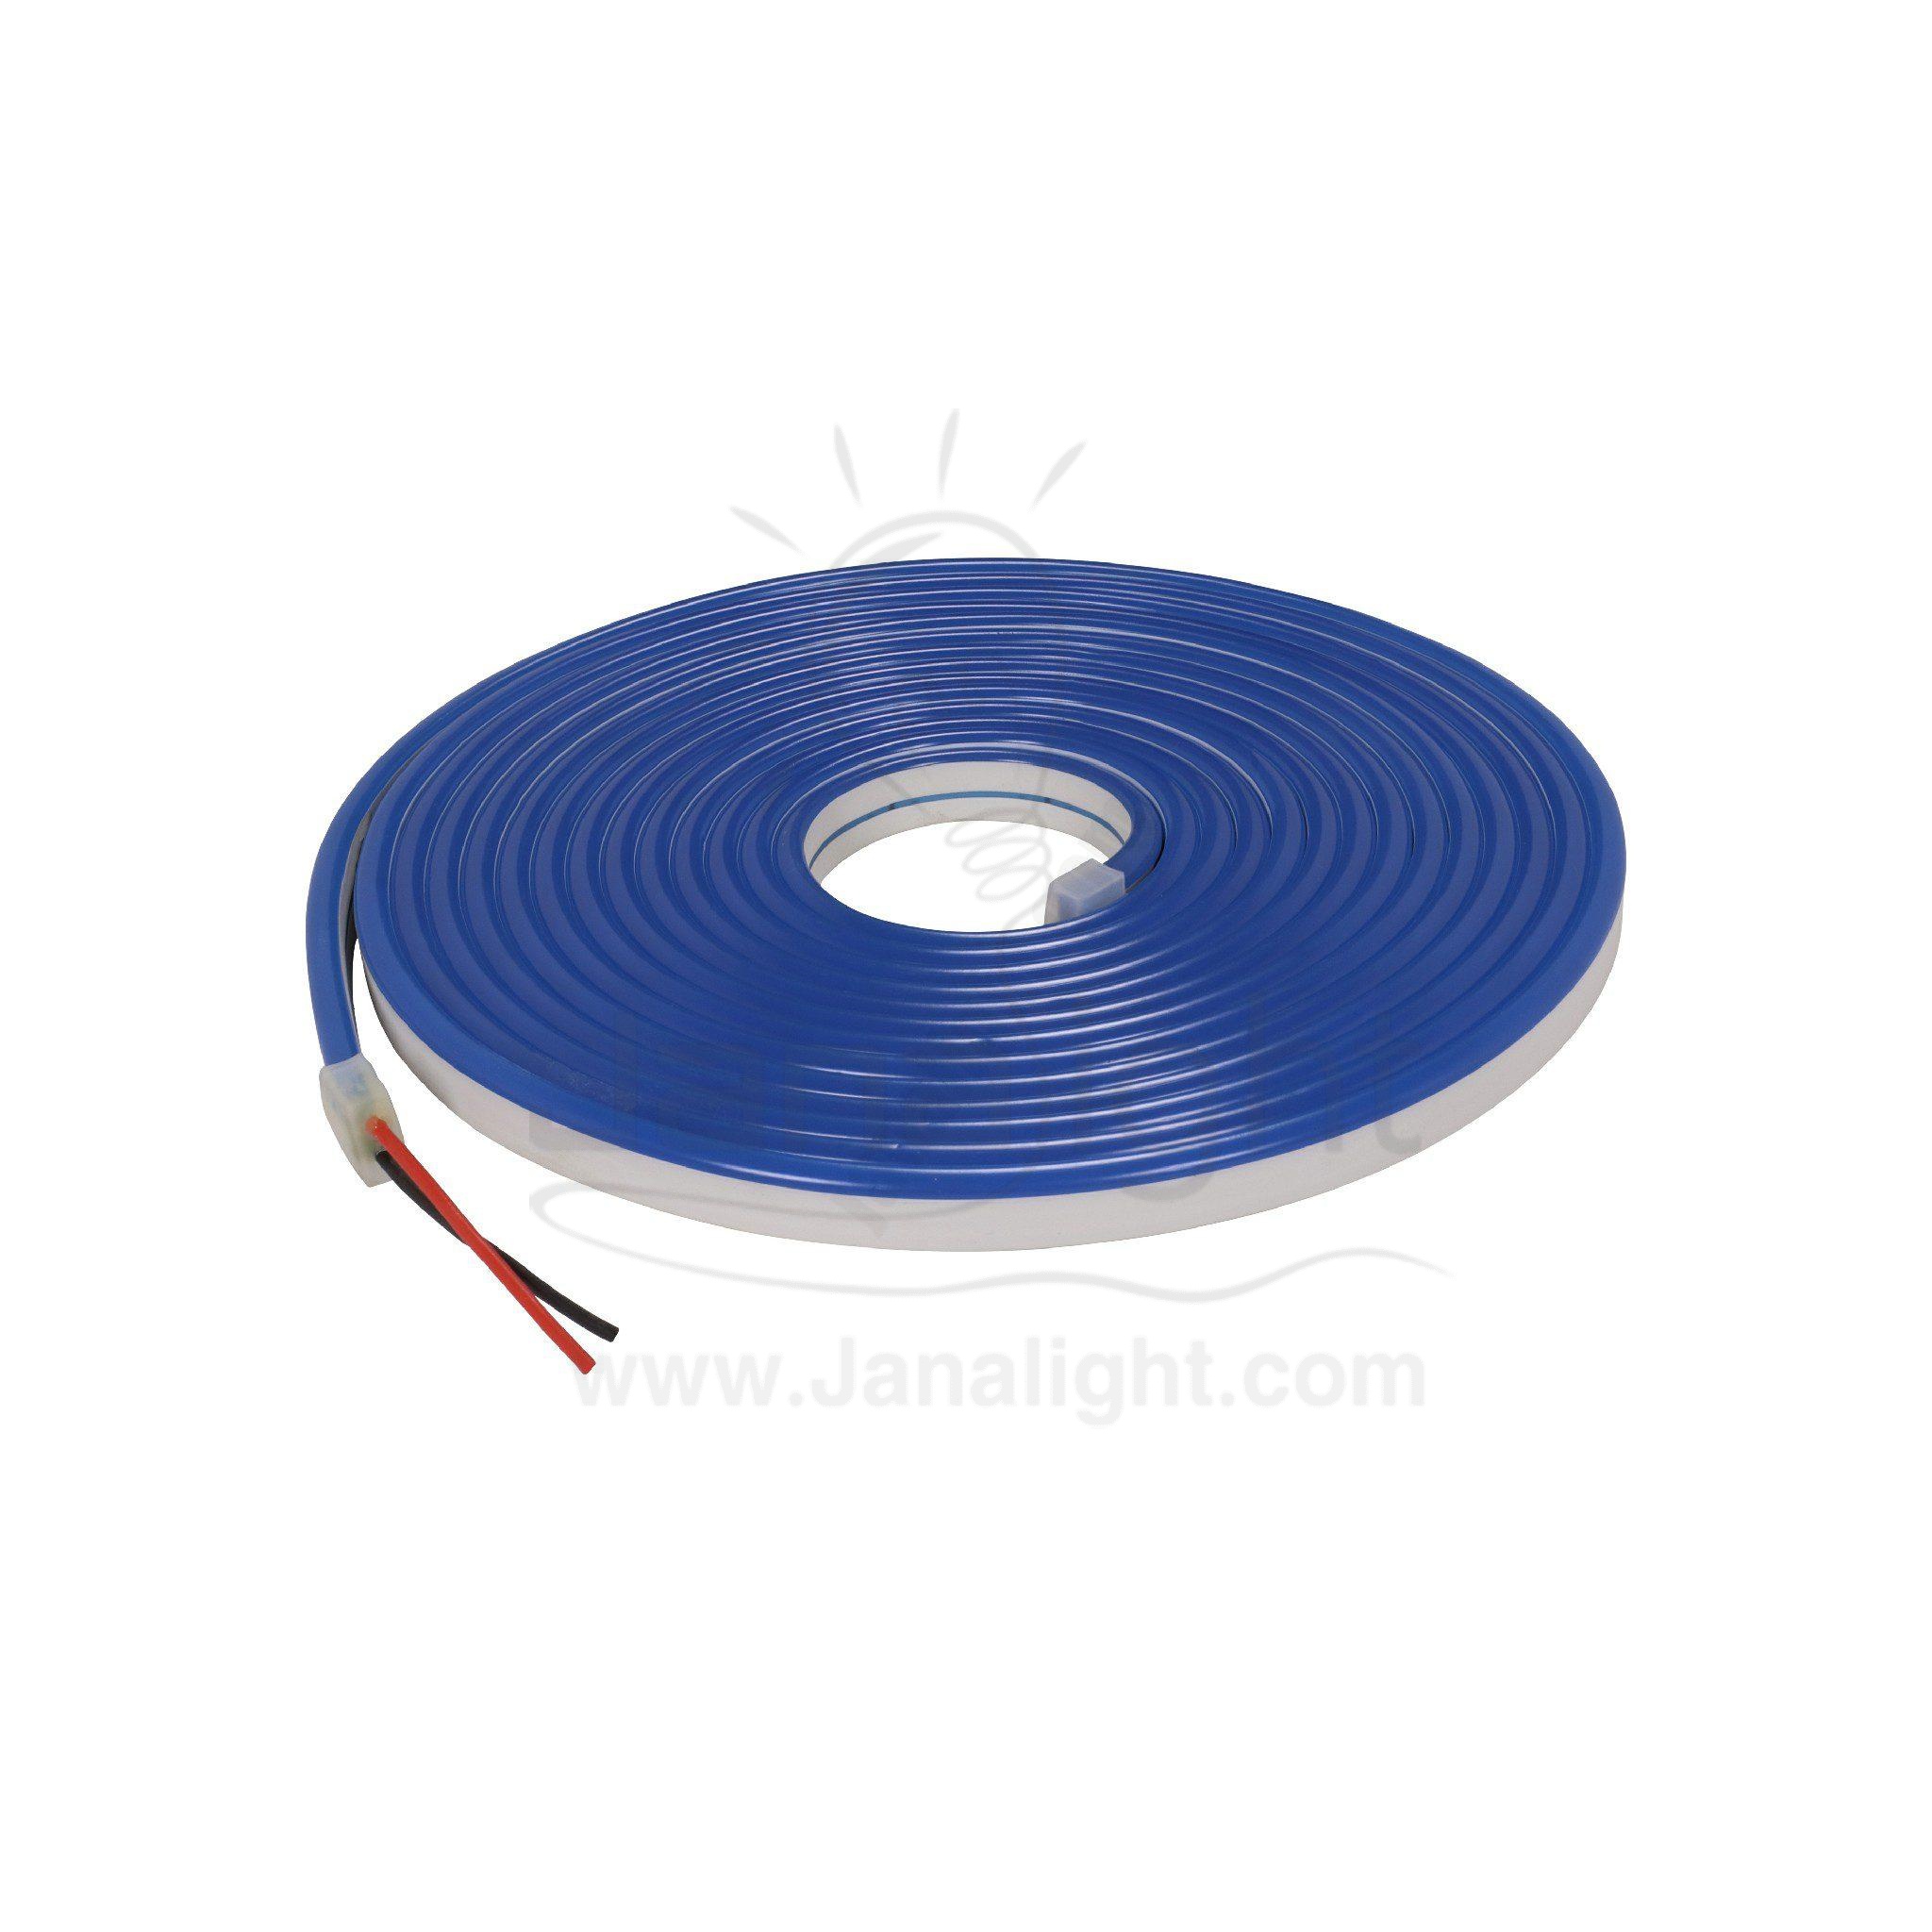 شريط لد اكرليك 12 فولت 5 متر ازرق led tabe acrylic 12v 5m blue